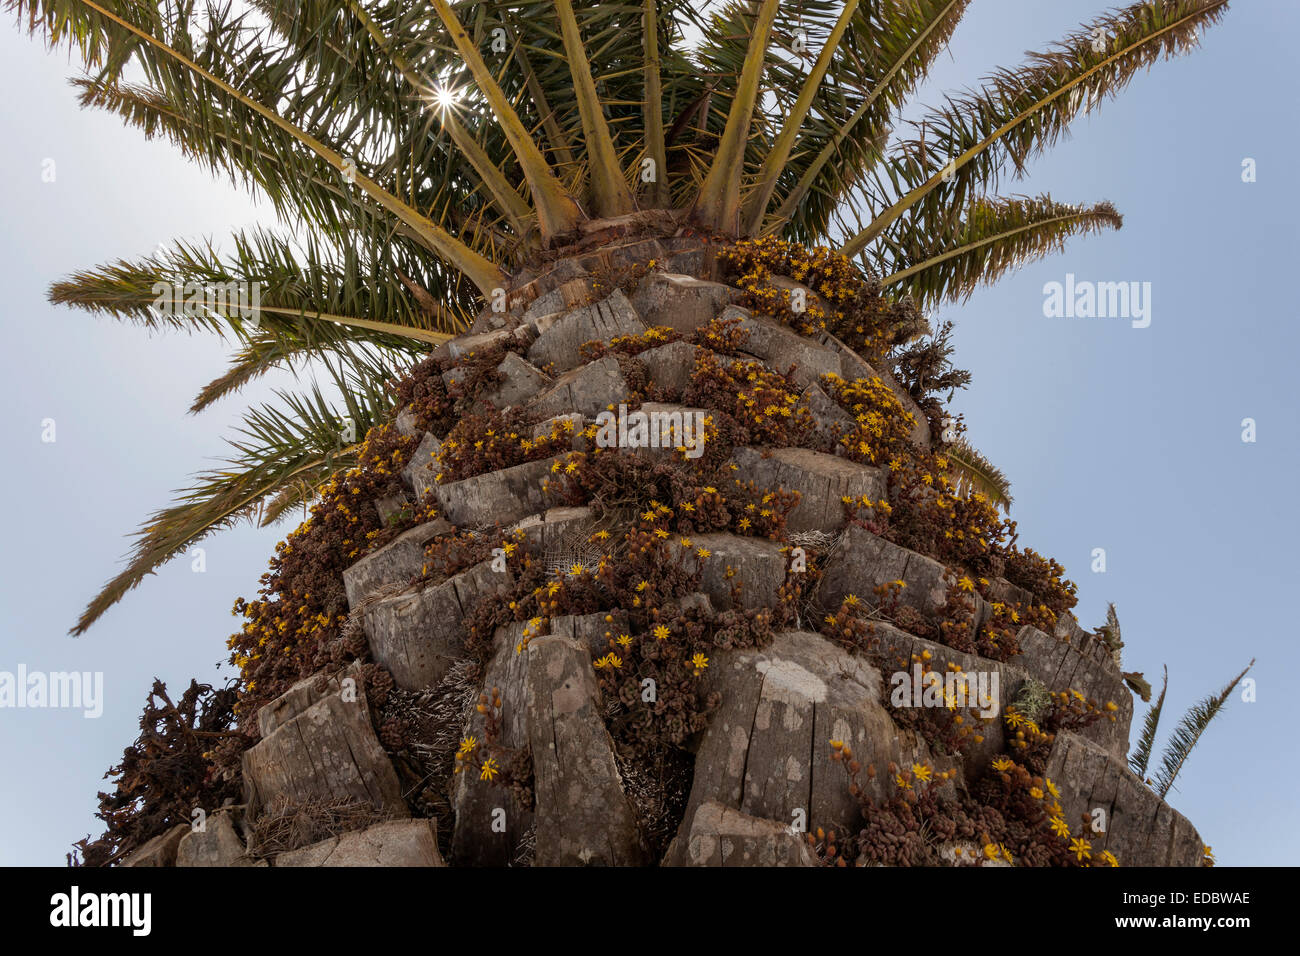 Île des Canaries (Phoenix canariensis), tige recouverte de plantes du Monanthes Crassulaceae famille (Monanthes) Banque D'Images